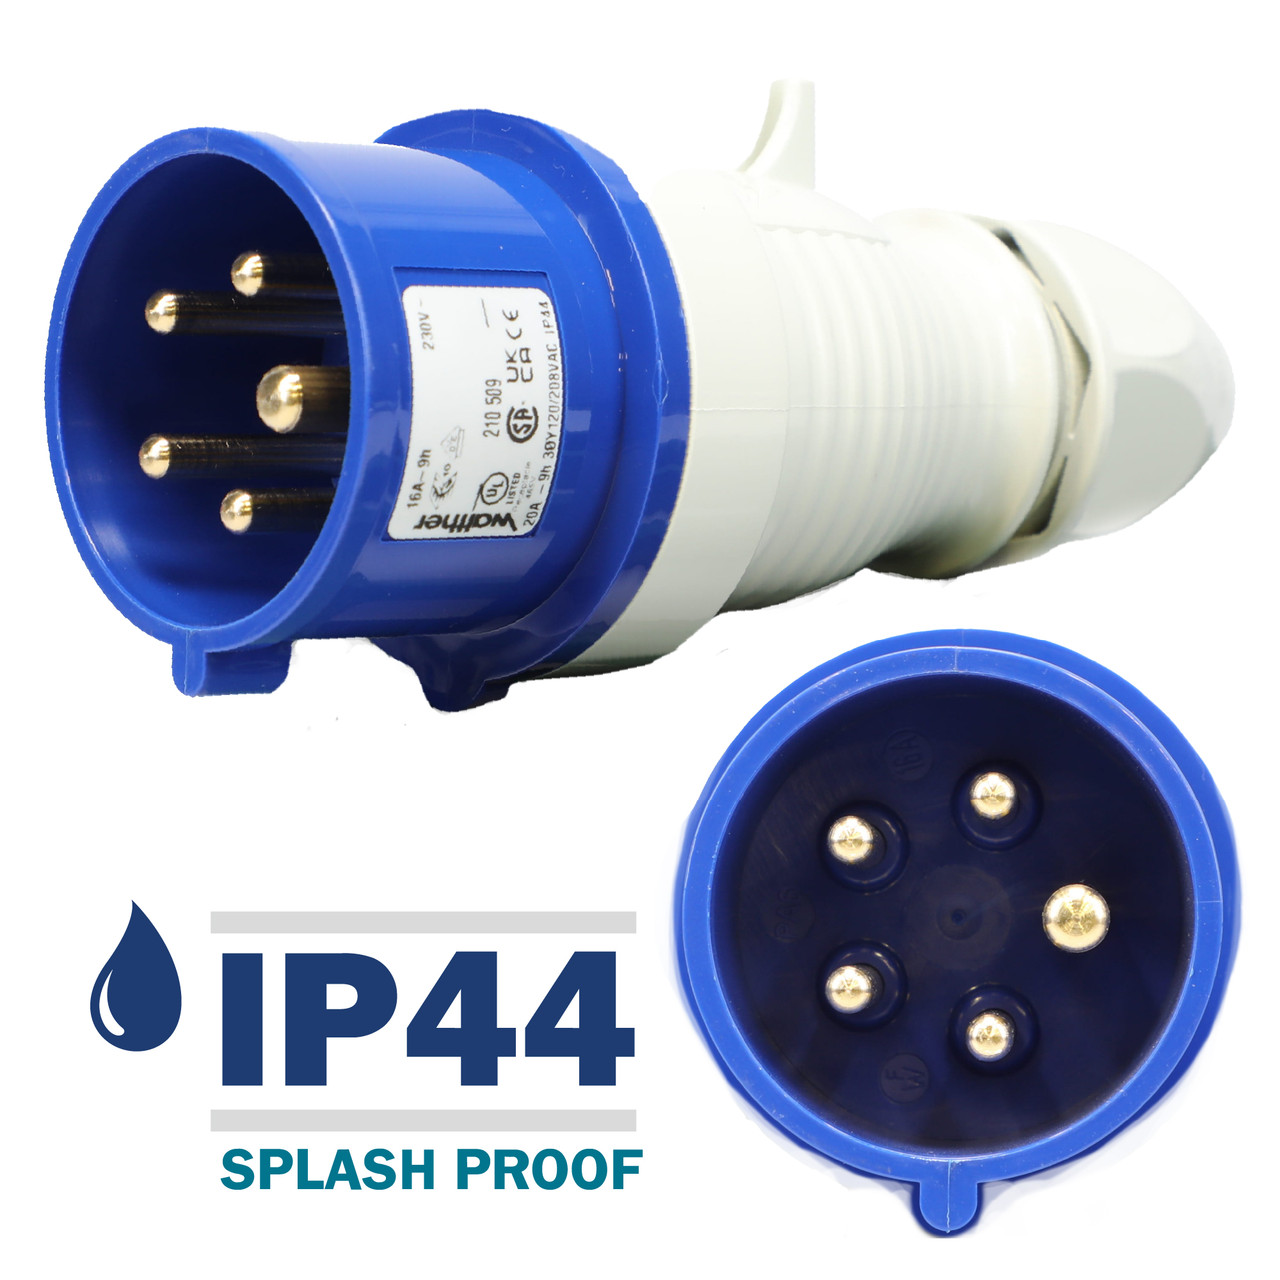 210509 Plug carries an environmental rating of IP44 Splashproof